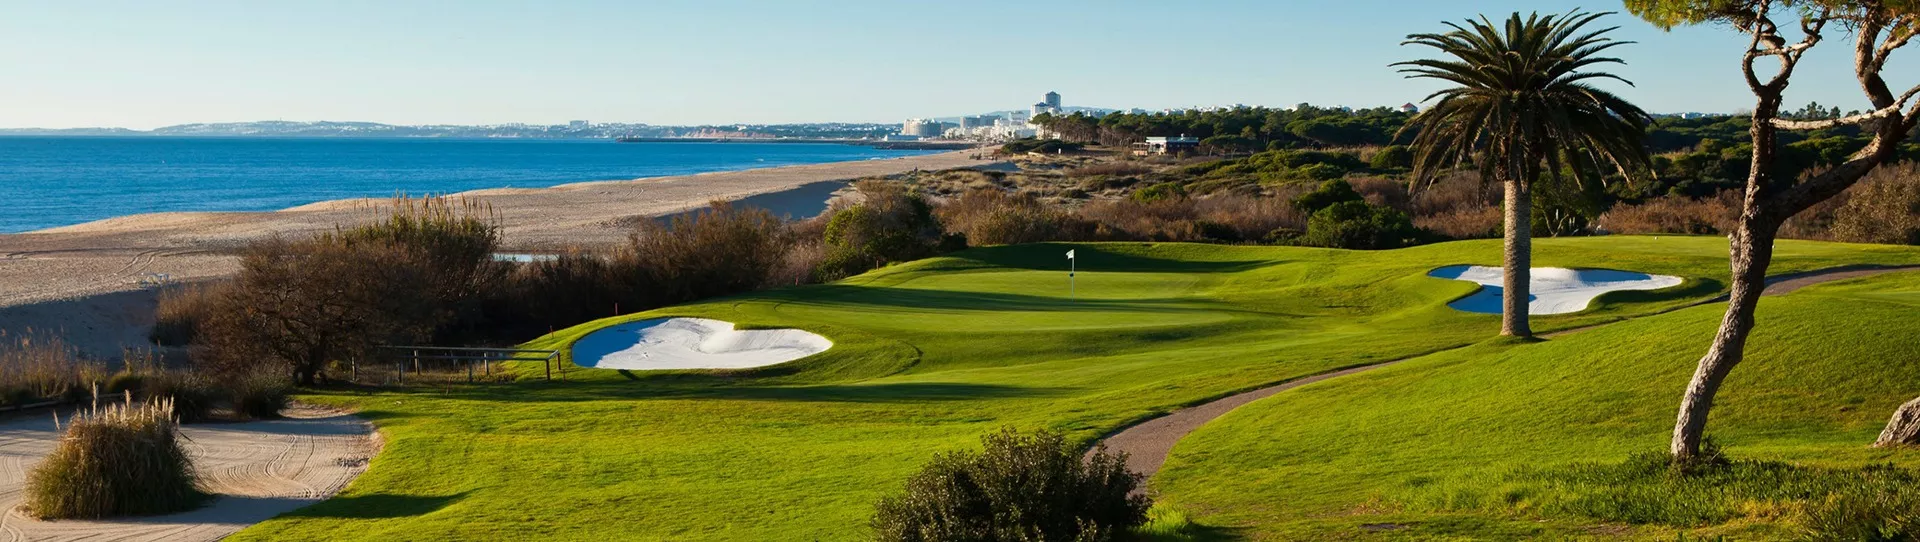 Portugal golf courses - Vale do Lobo Ocean - Photo 1